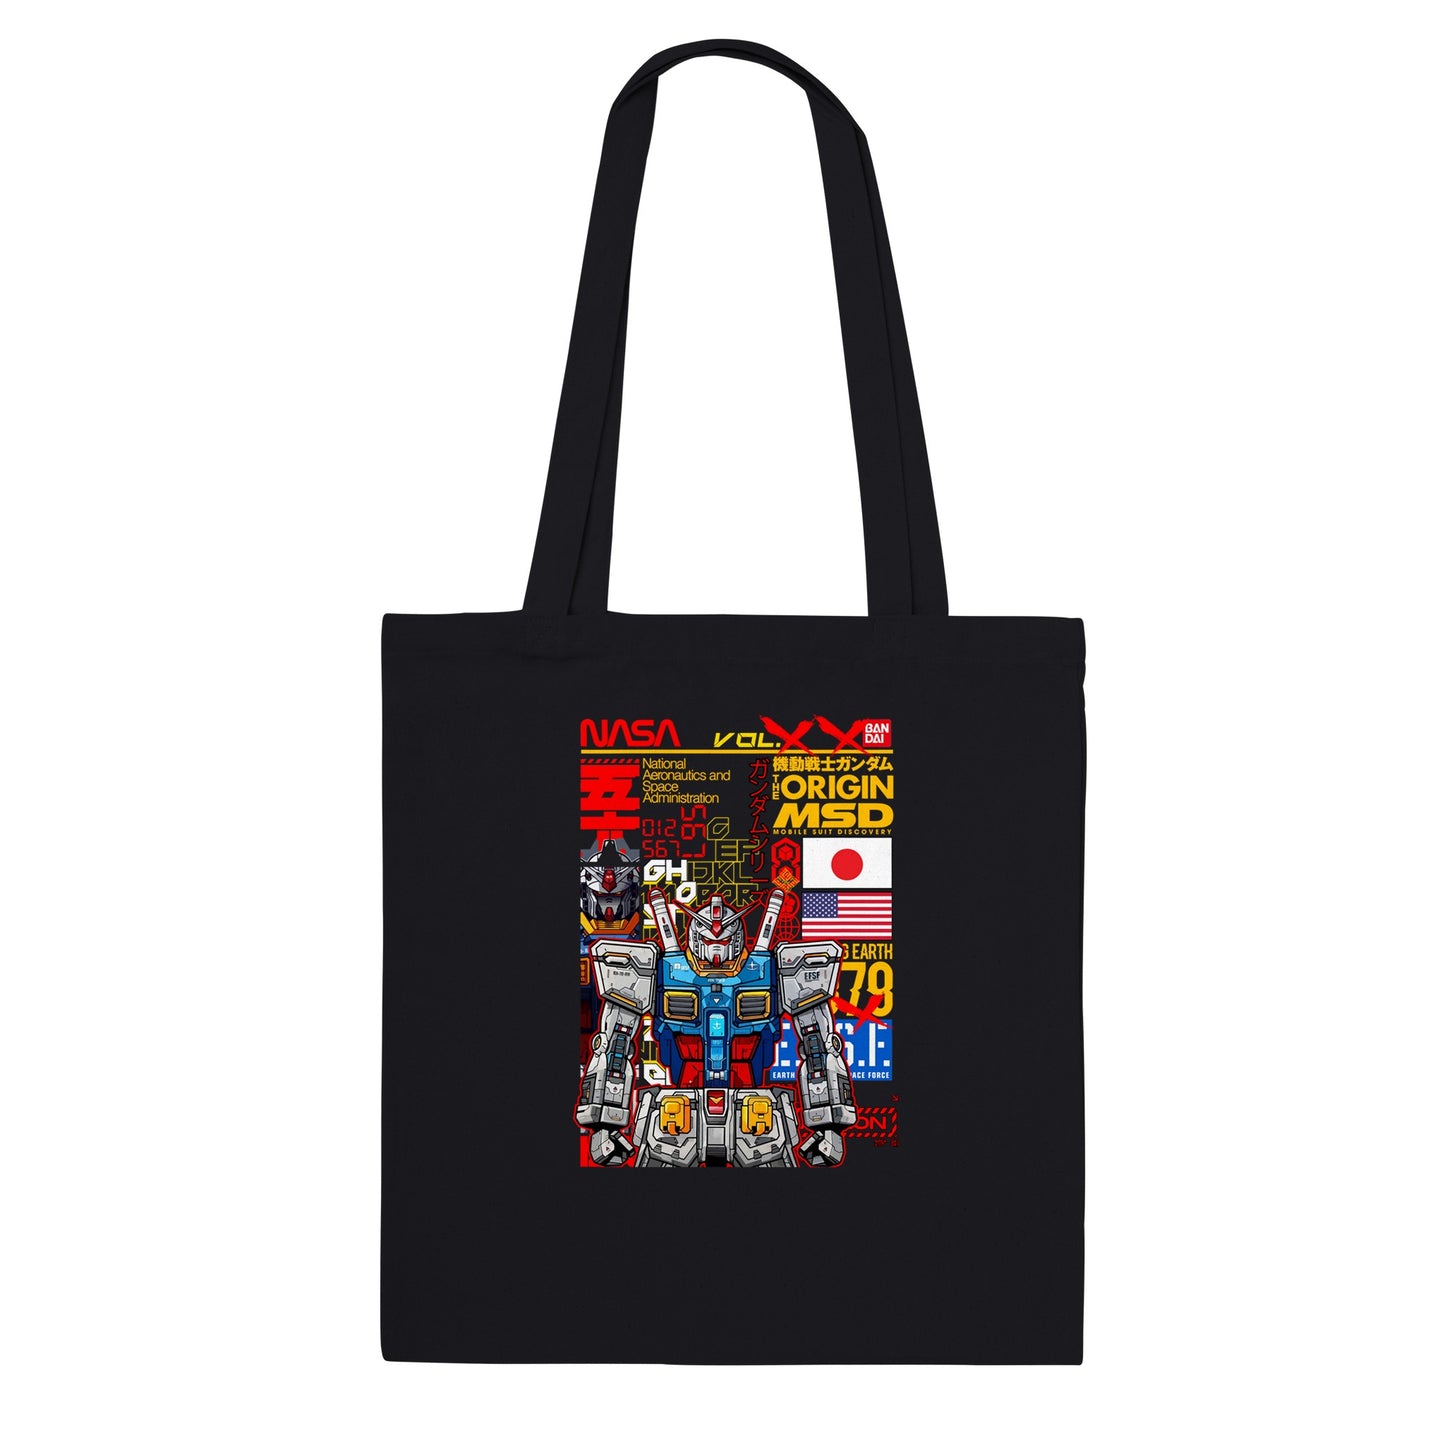 Gundam Tote Bag - Gundam Artwork Vol 1 - Premium Tote Bag